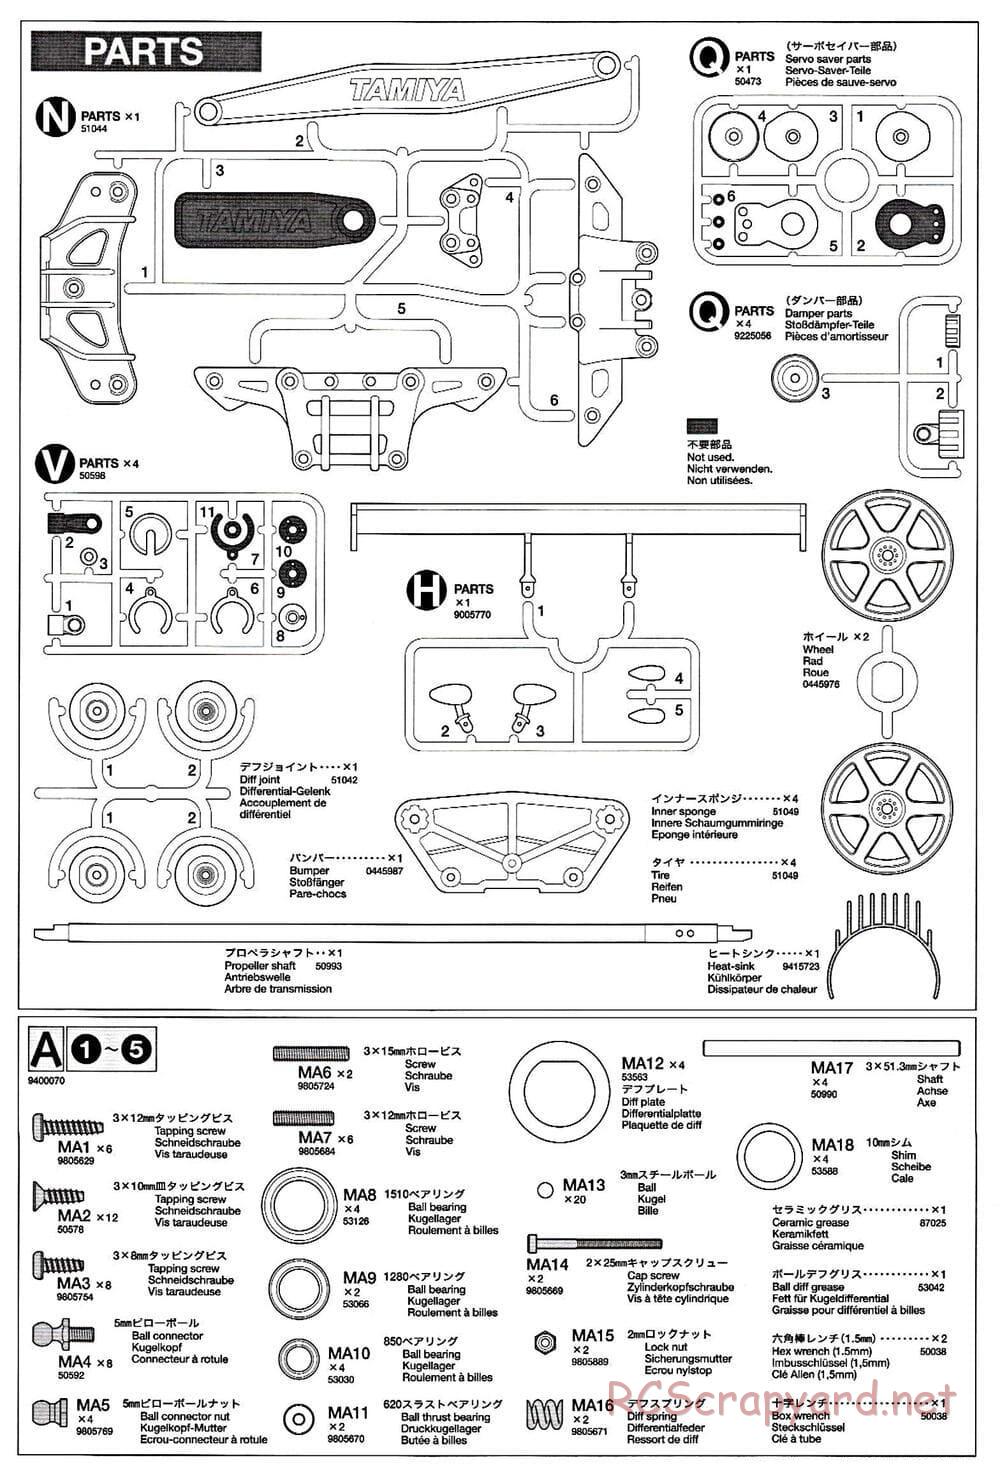 Tamiya - TB-02 Chassis - Manual - Page 21